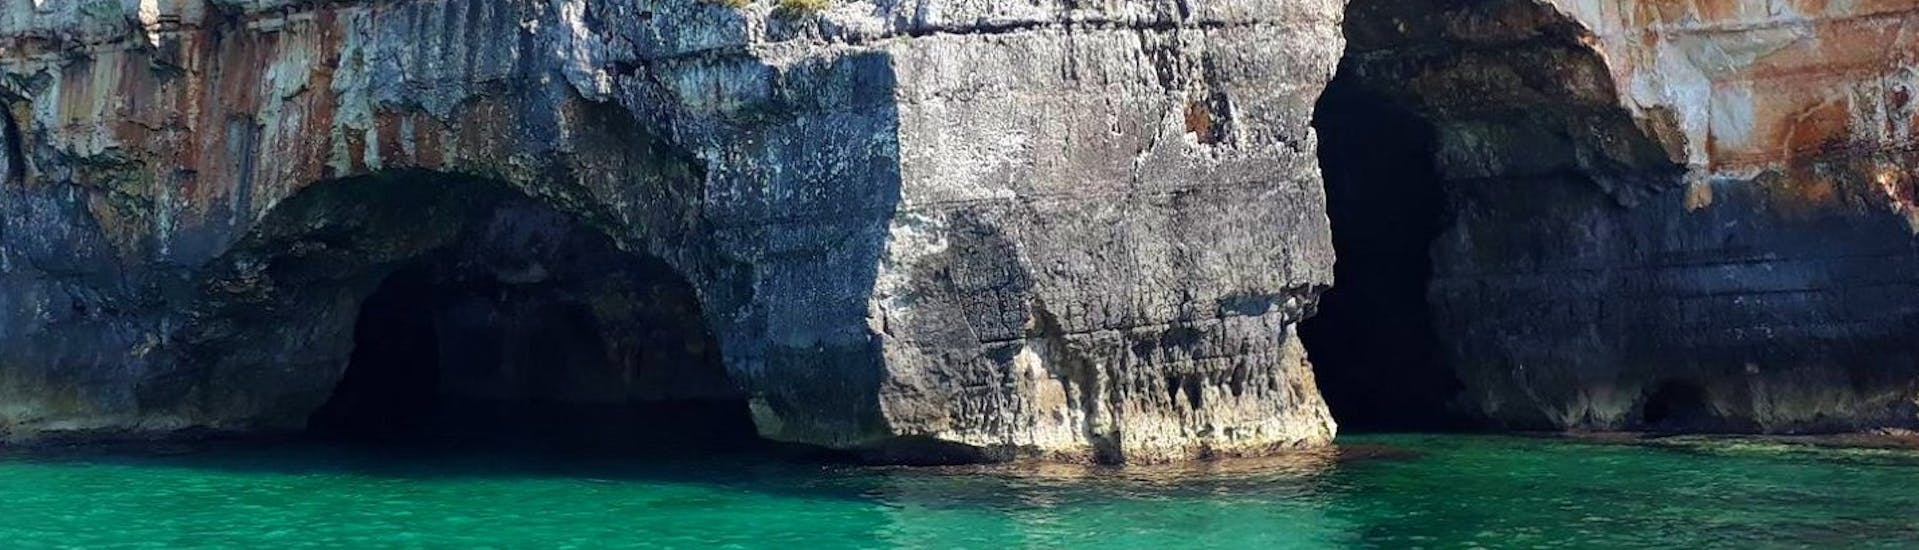 Immagine dell'imponente Grotta delle Tre Porte scattata durante un noleggio barca a Torre Vado fino a massimo 6 persone con Rosa dei Venti Escursioni.